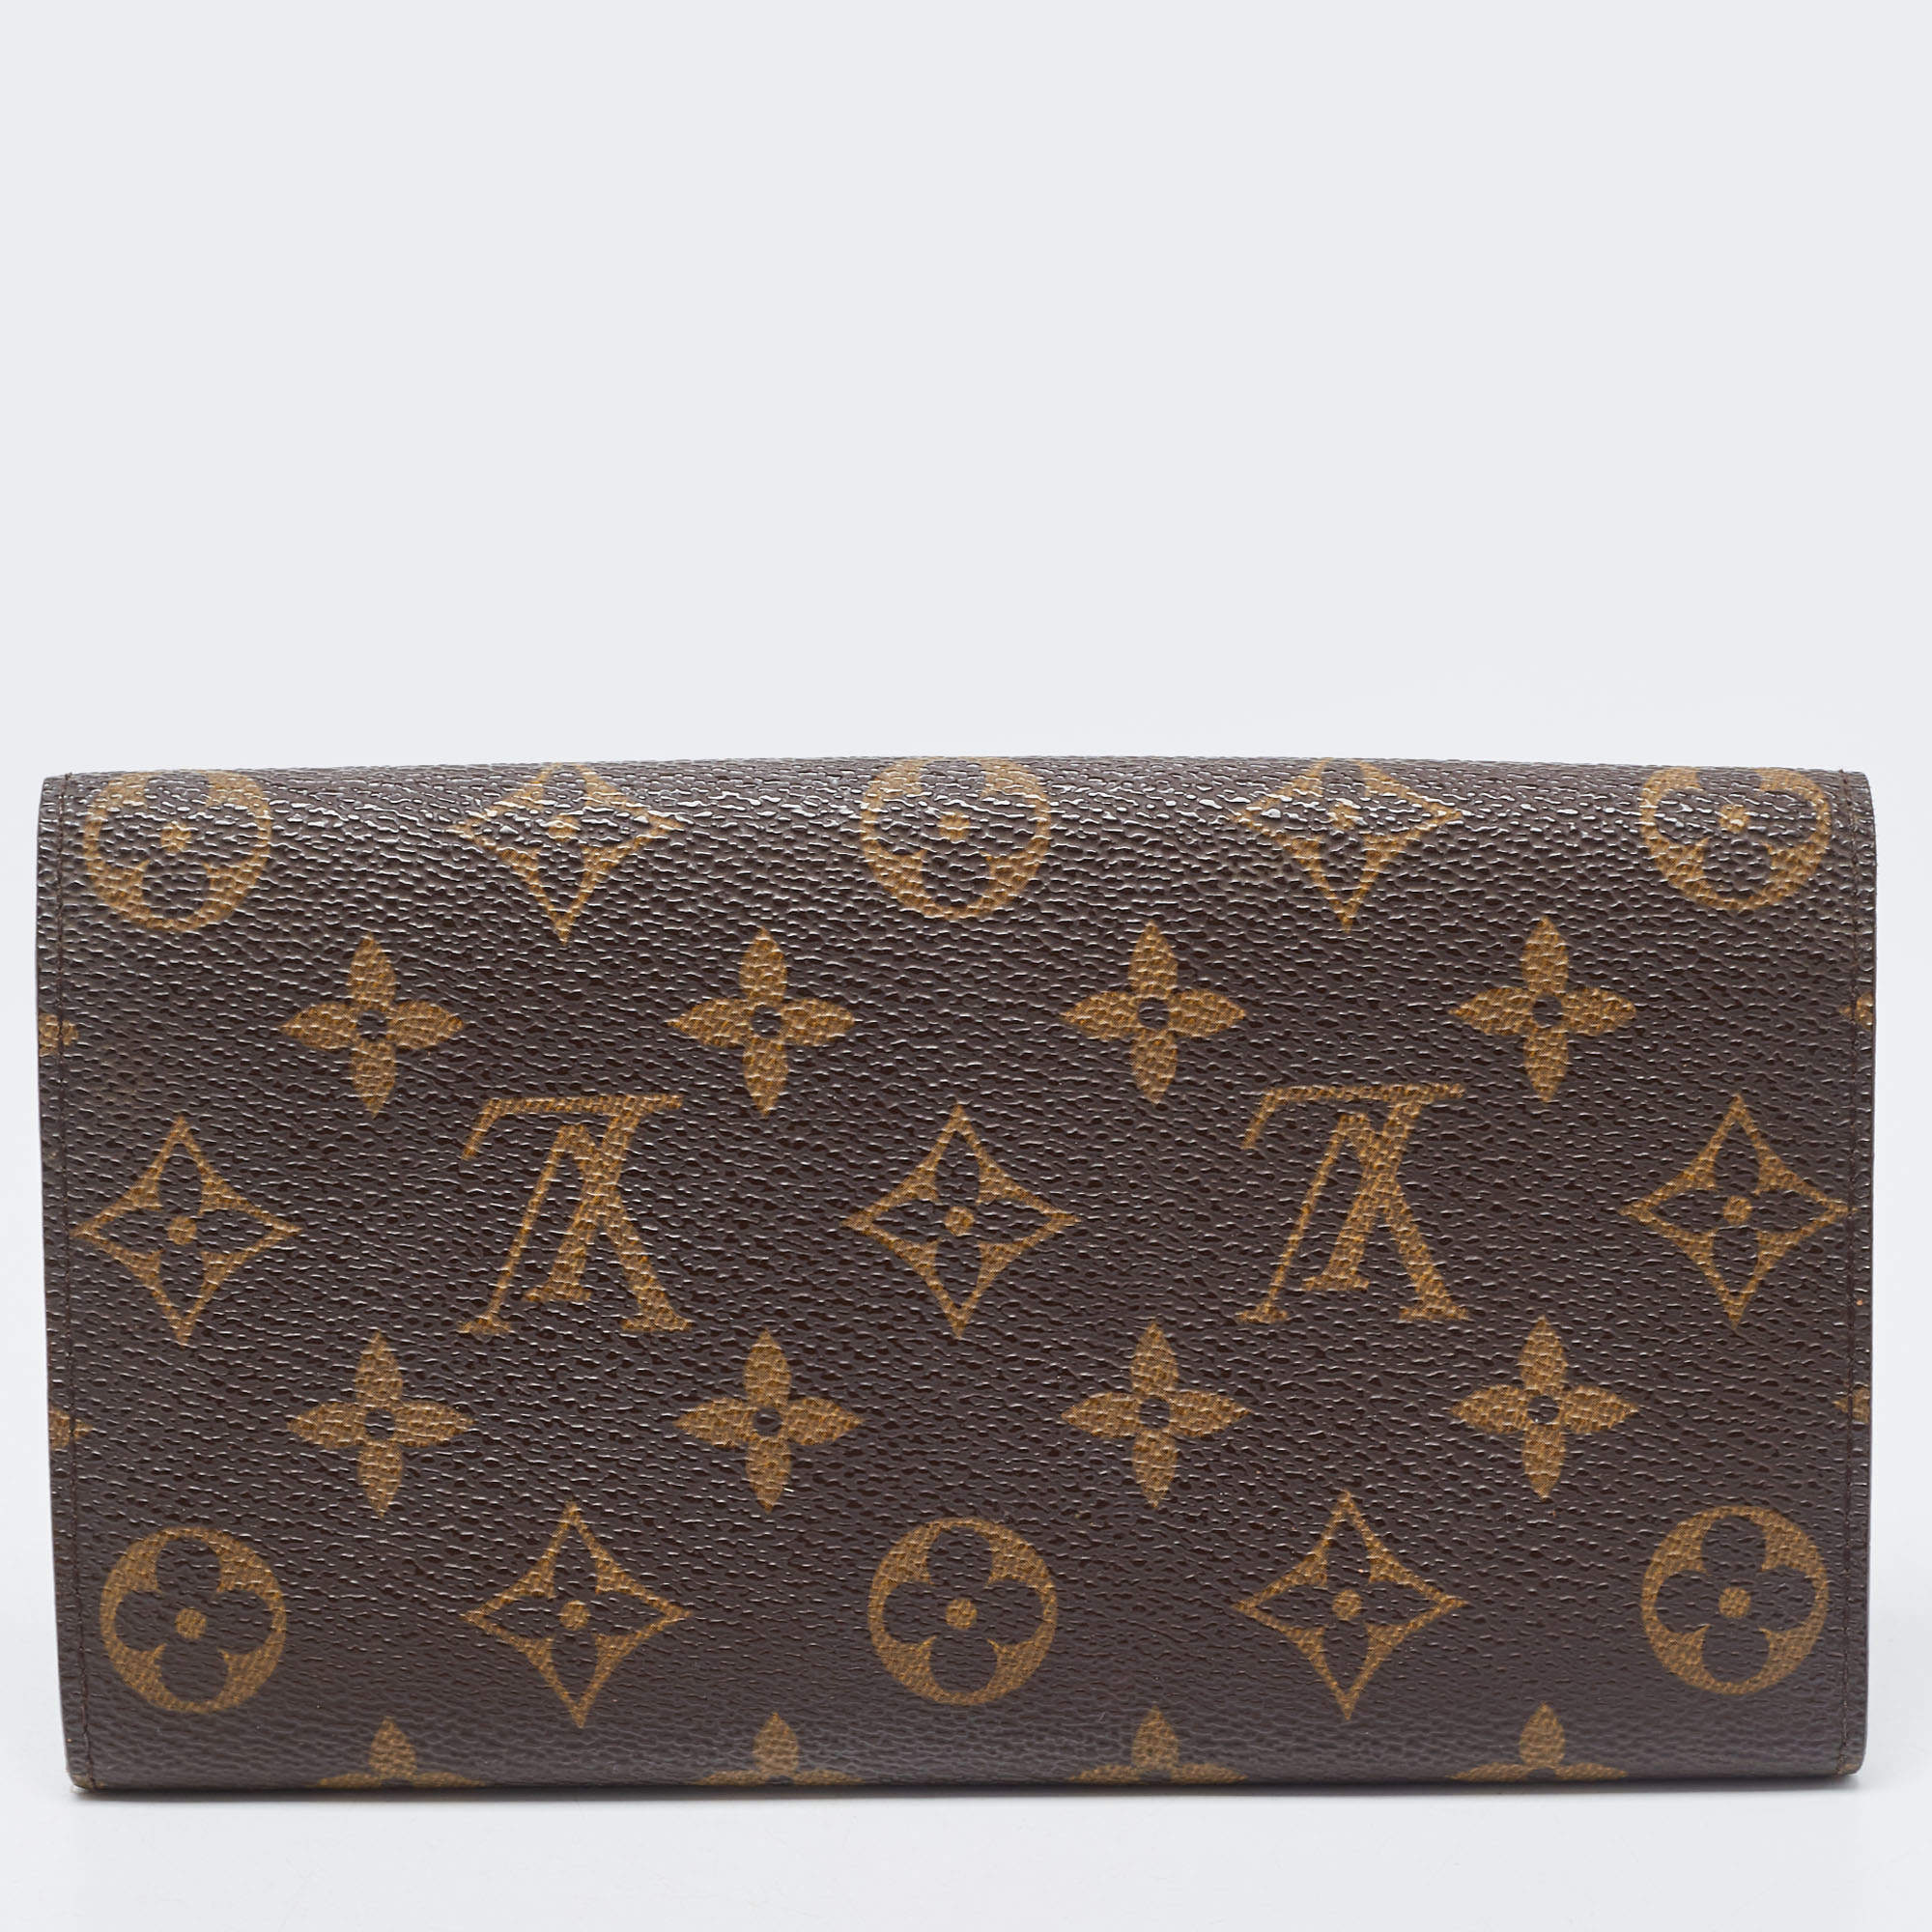 Louis Vuitton - Sarah Wallet - Monogram - Brown - Women - Luxury